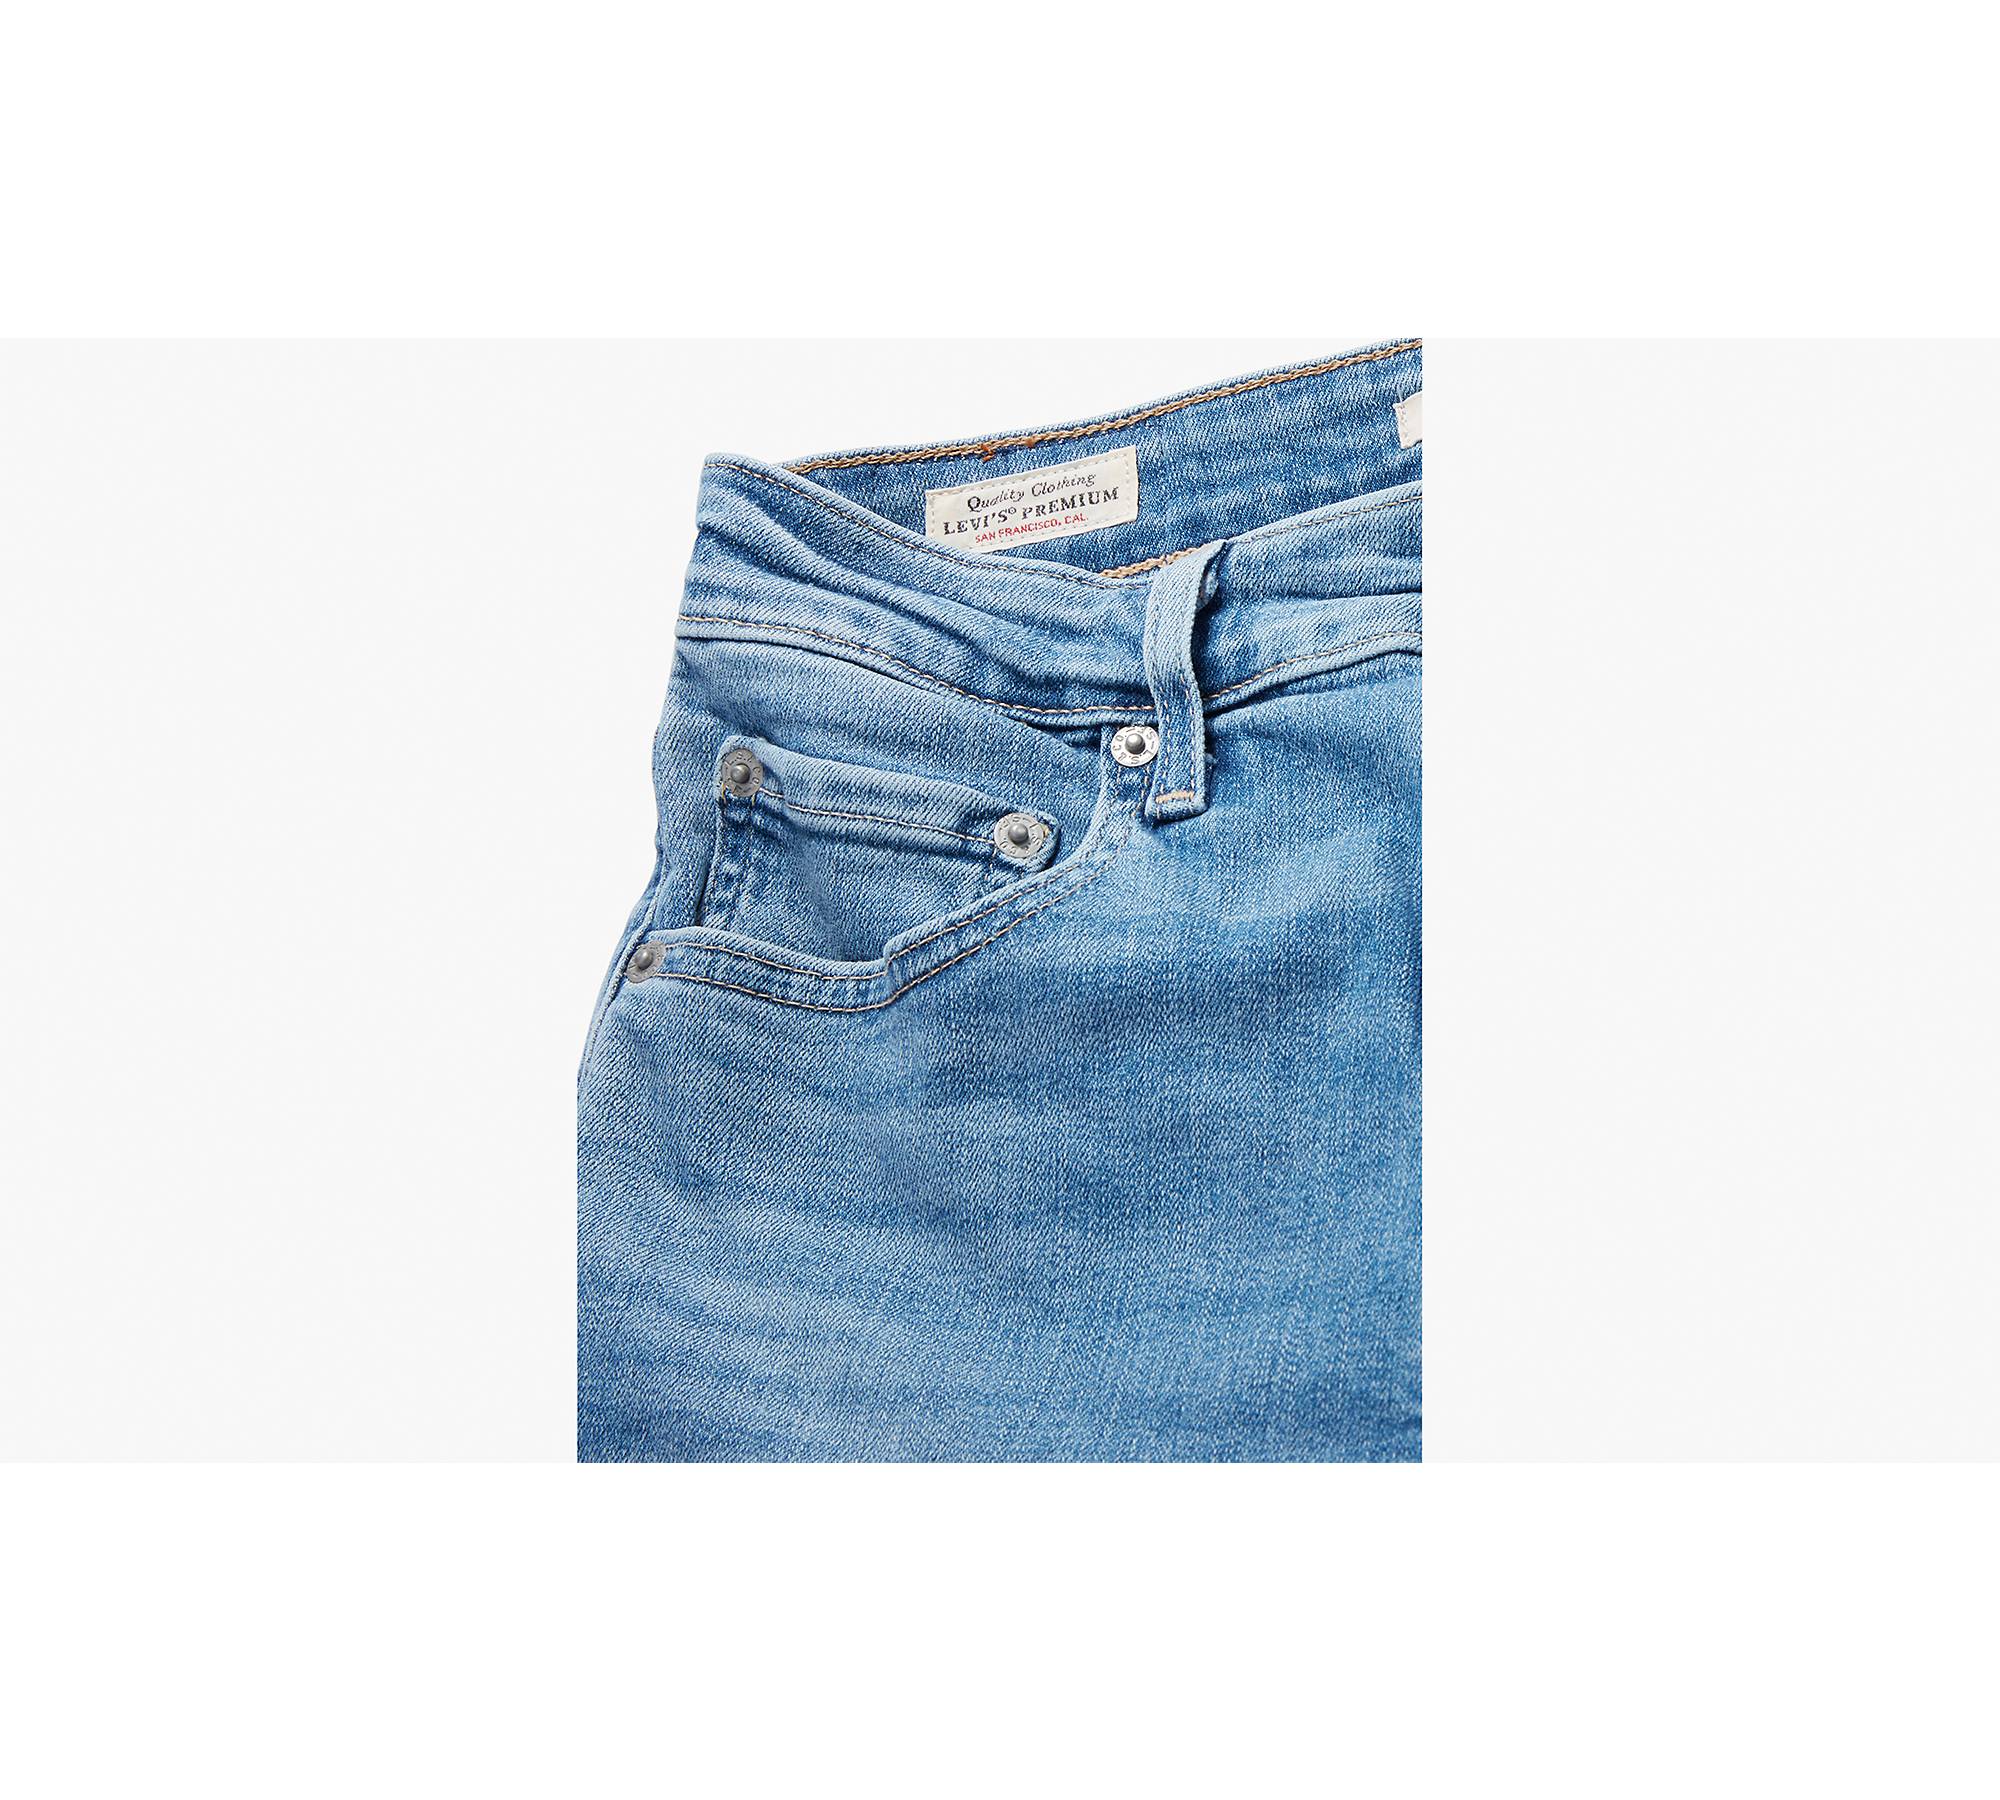 Women Denim Jeans High Waist Button Pockets Super Mini Shorts Pants Jeans  Blue M